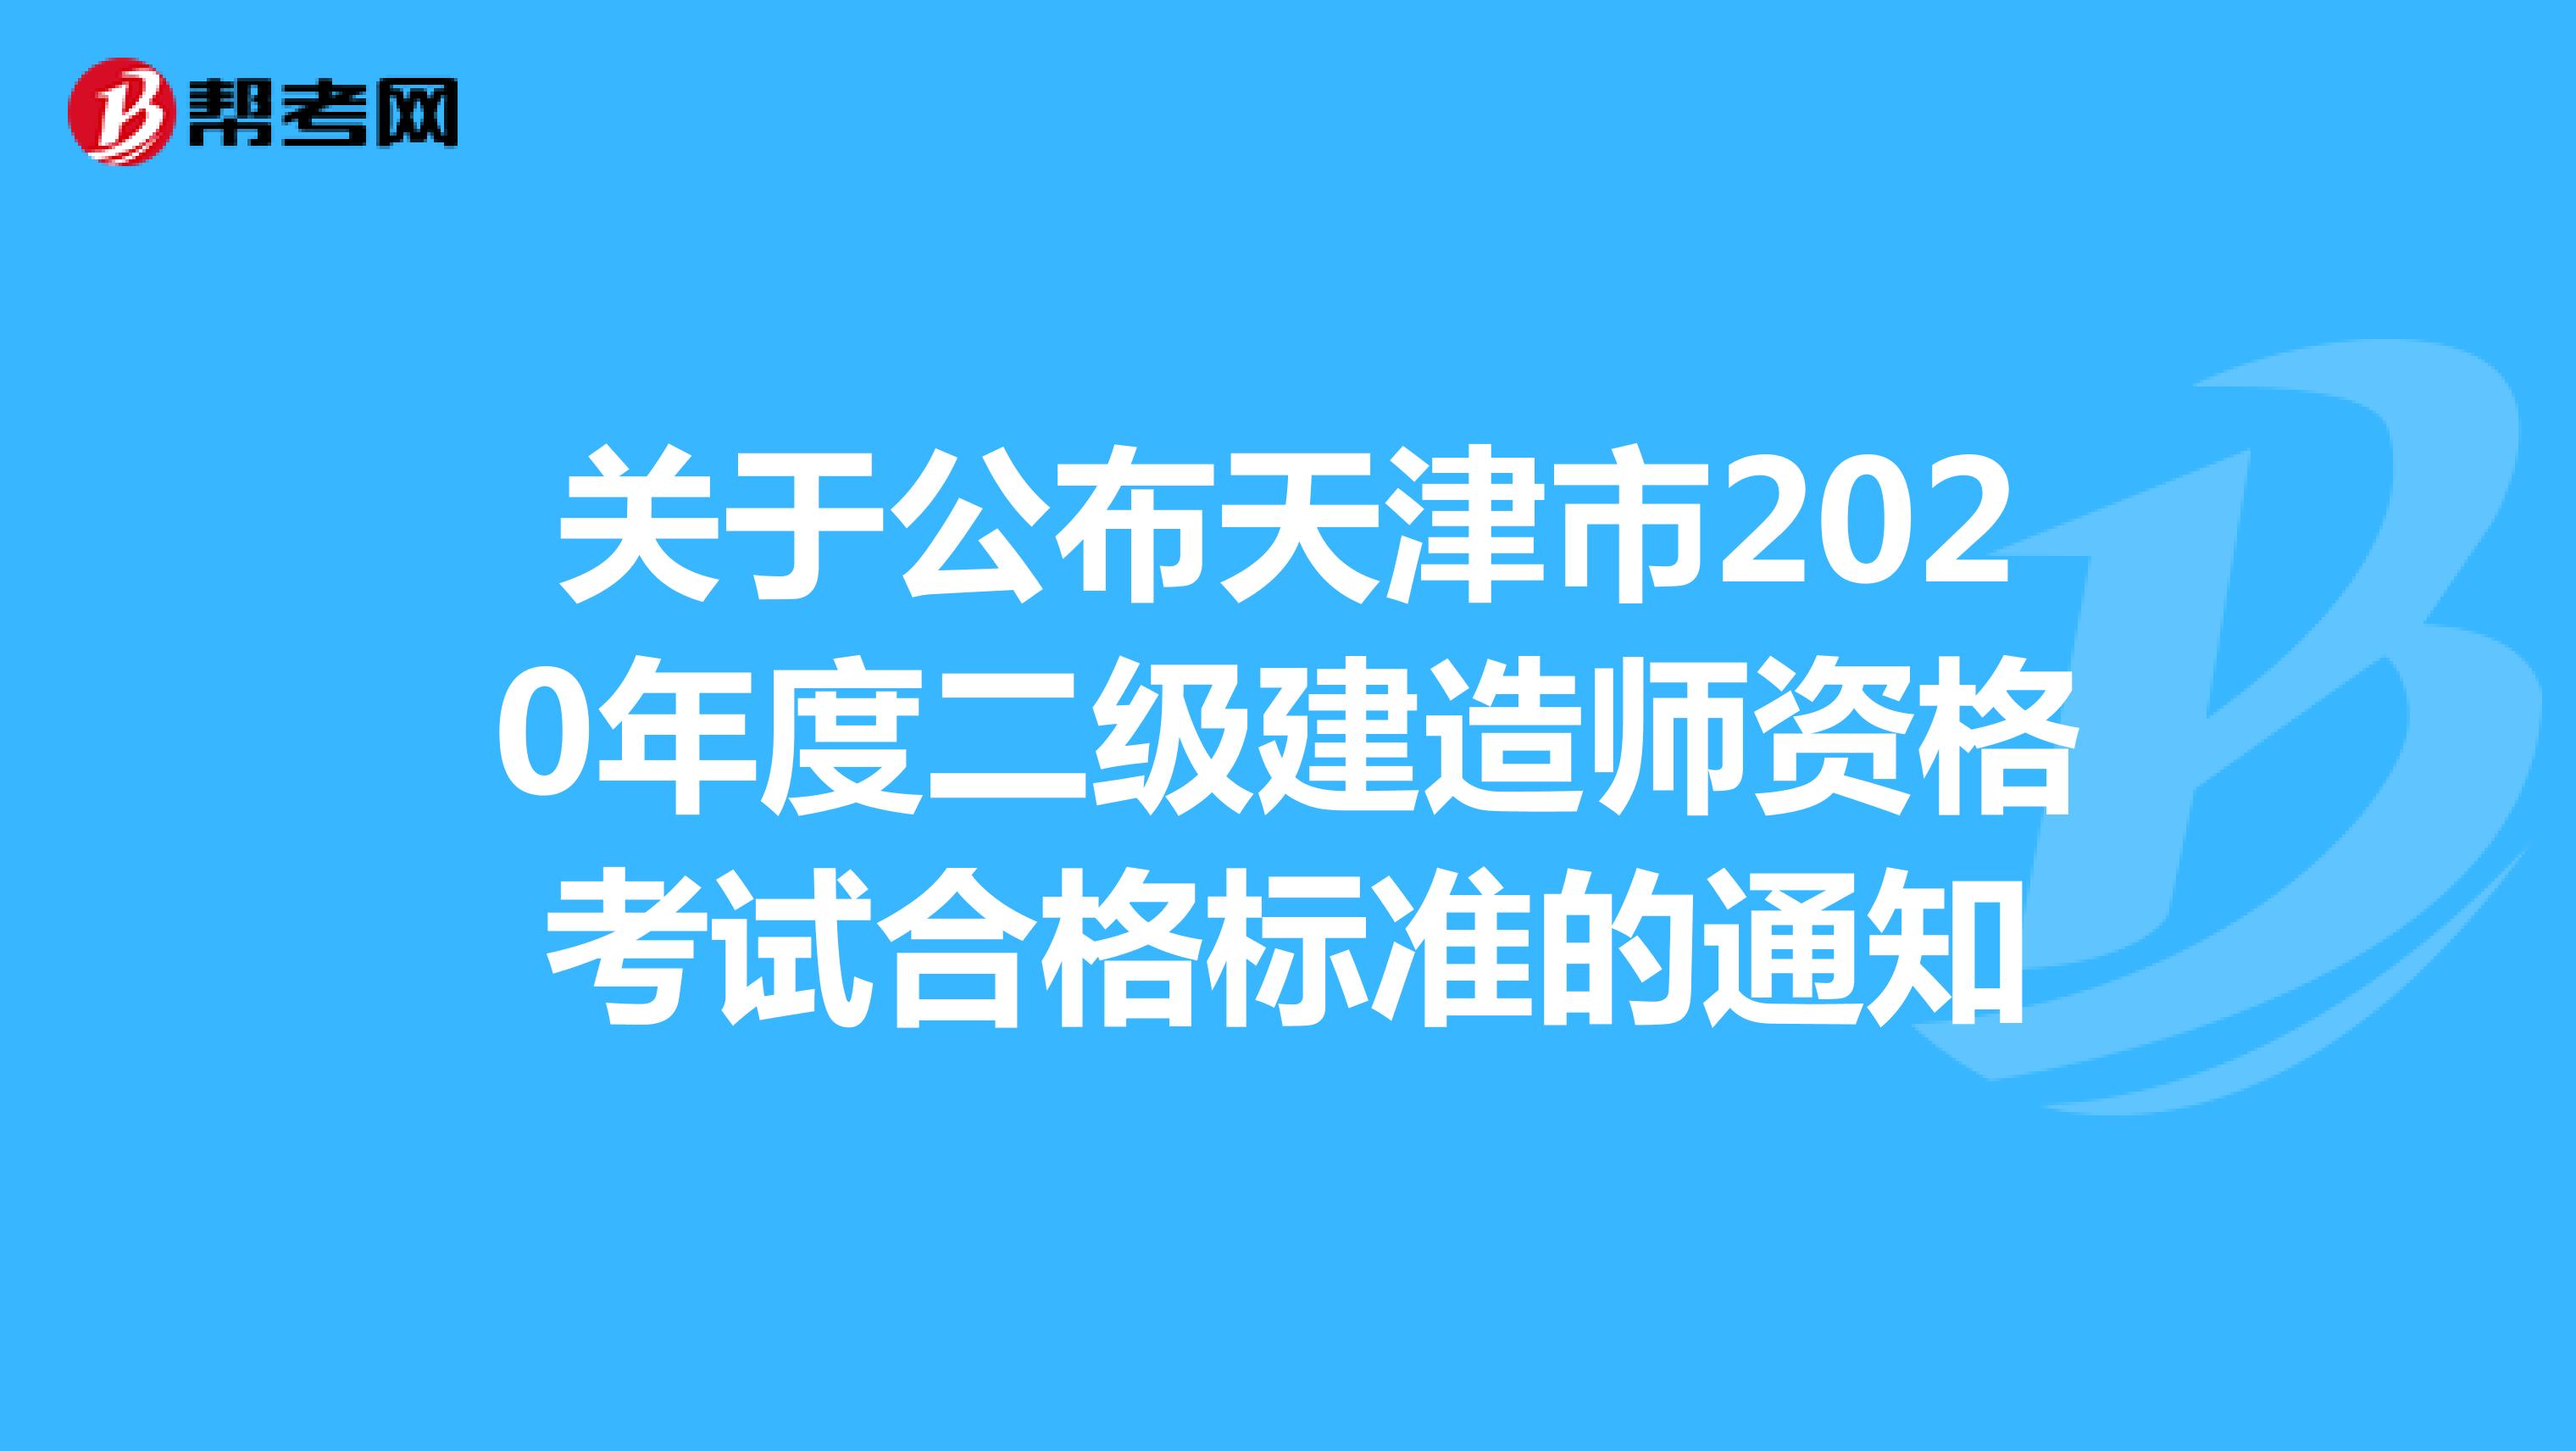 关于公布天津市2020年度二级建造师资格考试合格标准的通知